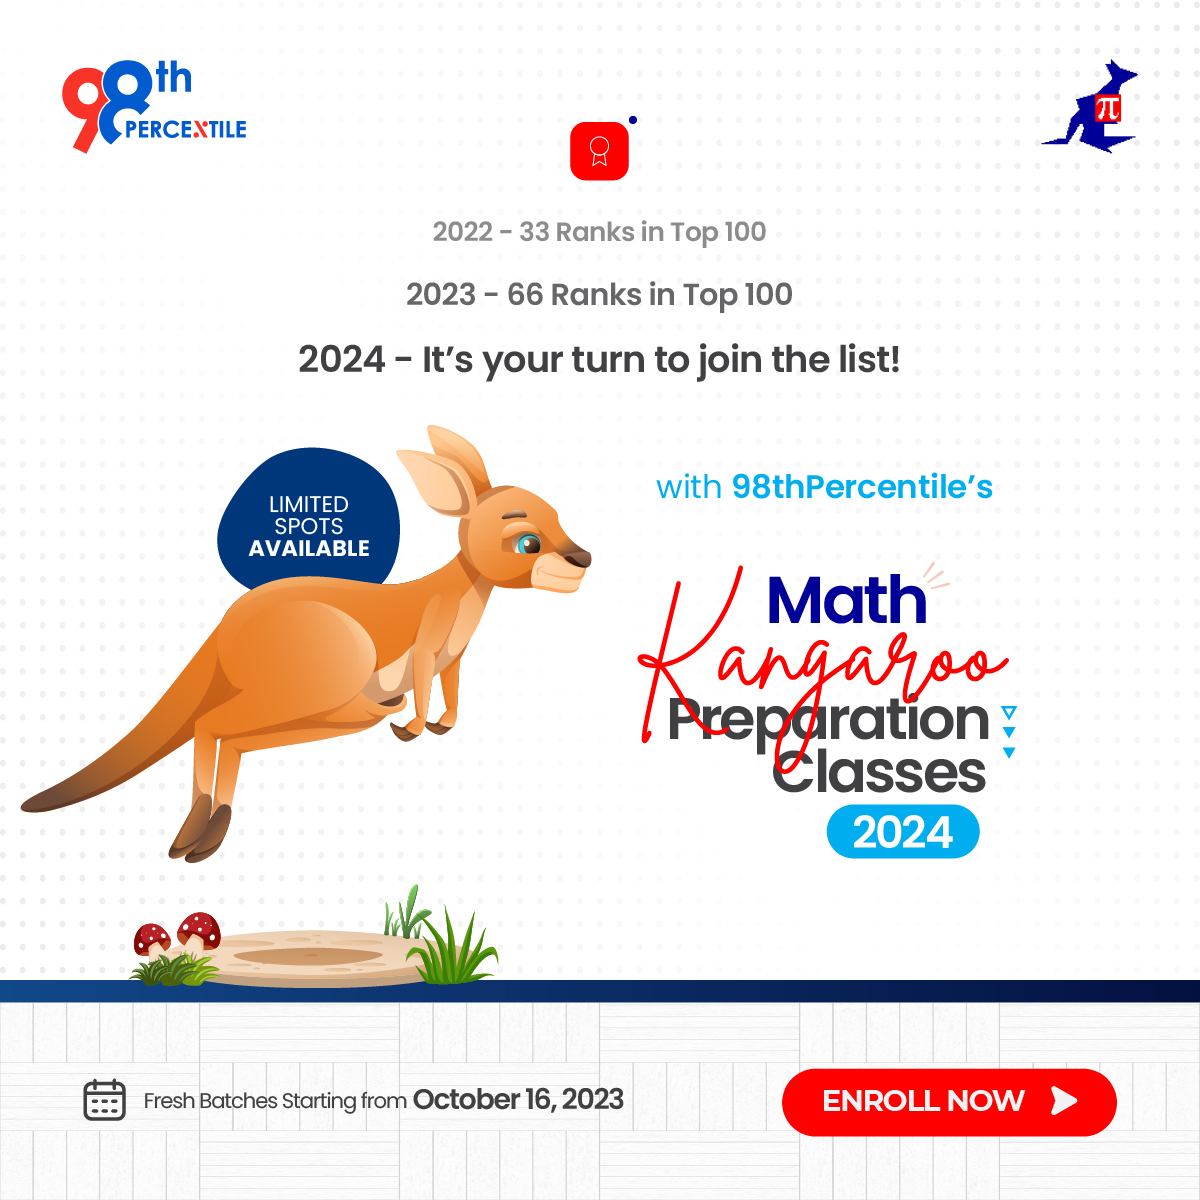 Math kangaroo preparation 